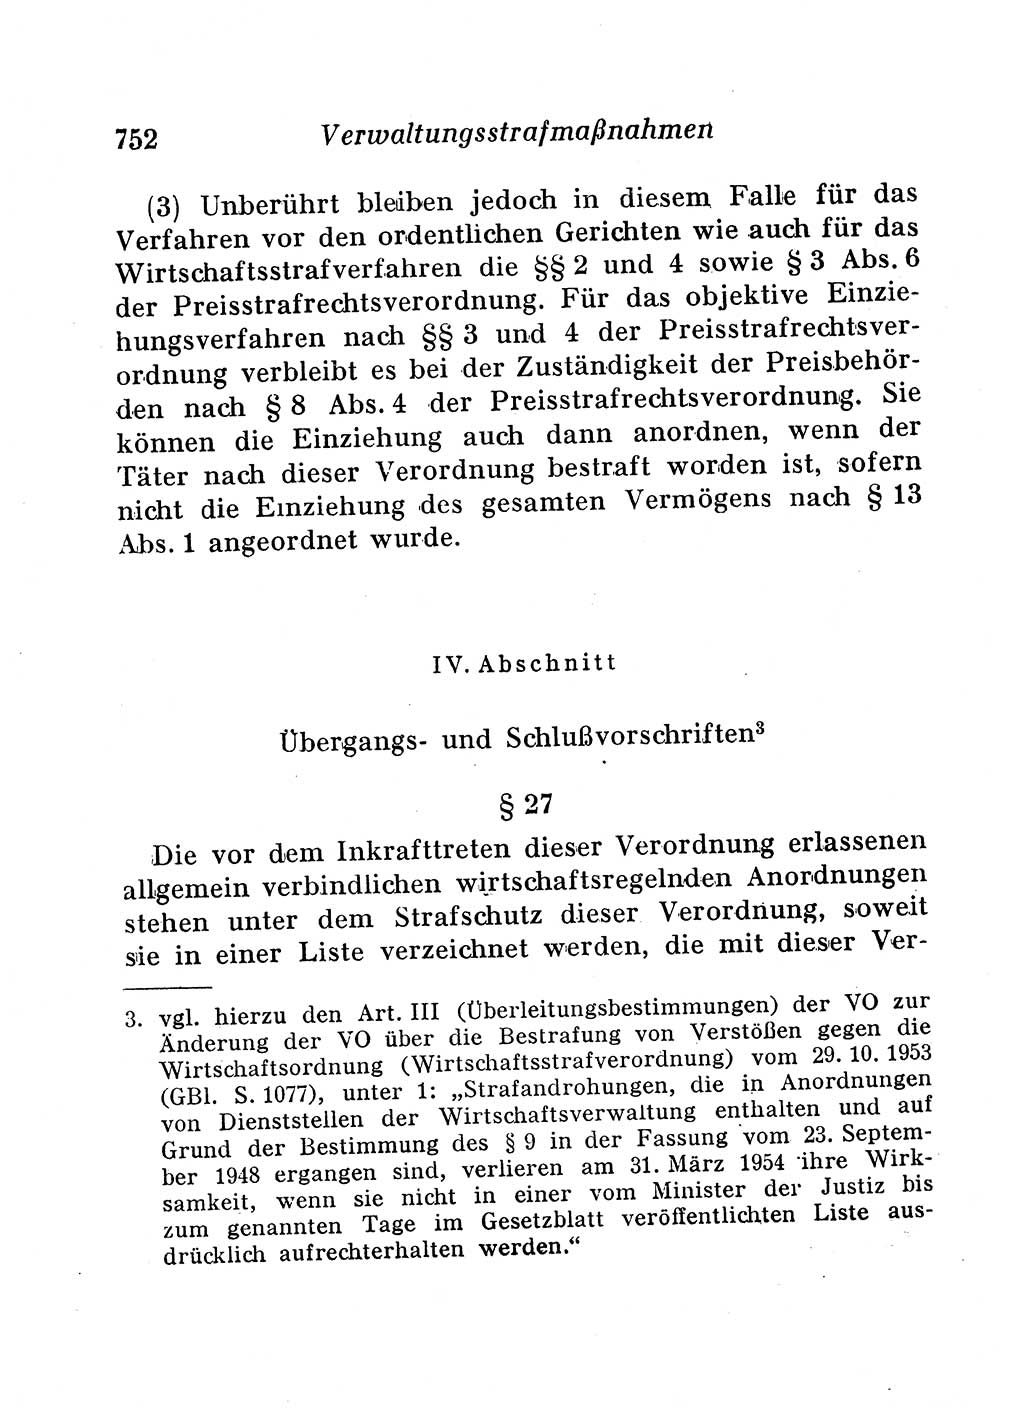 Staats- und verwaltungsrechtliche Gesetze der Deutschen Demokratischen Republik (DDR) 1958, Seite 752 (StVerwR Ges. DDR 1958, S. 752)